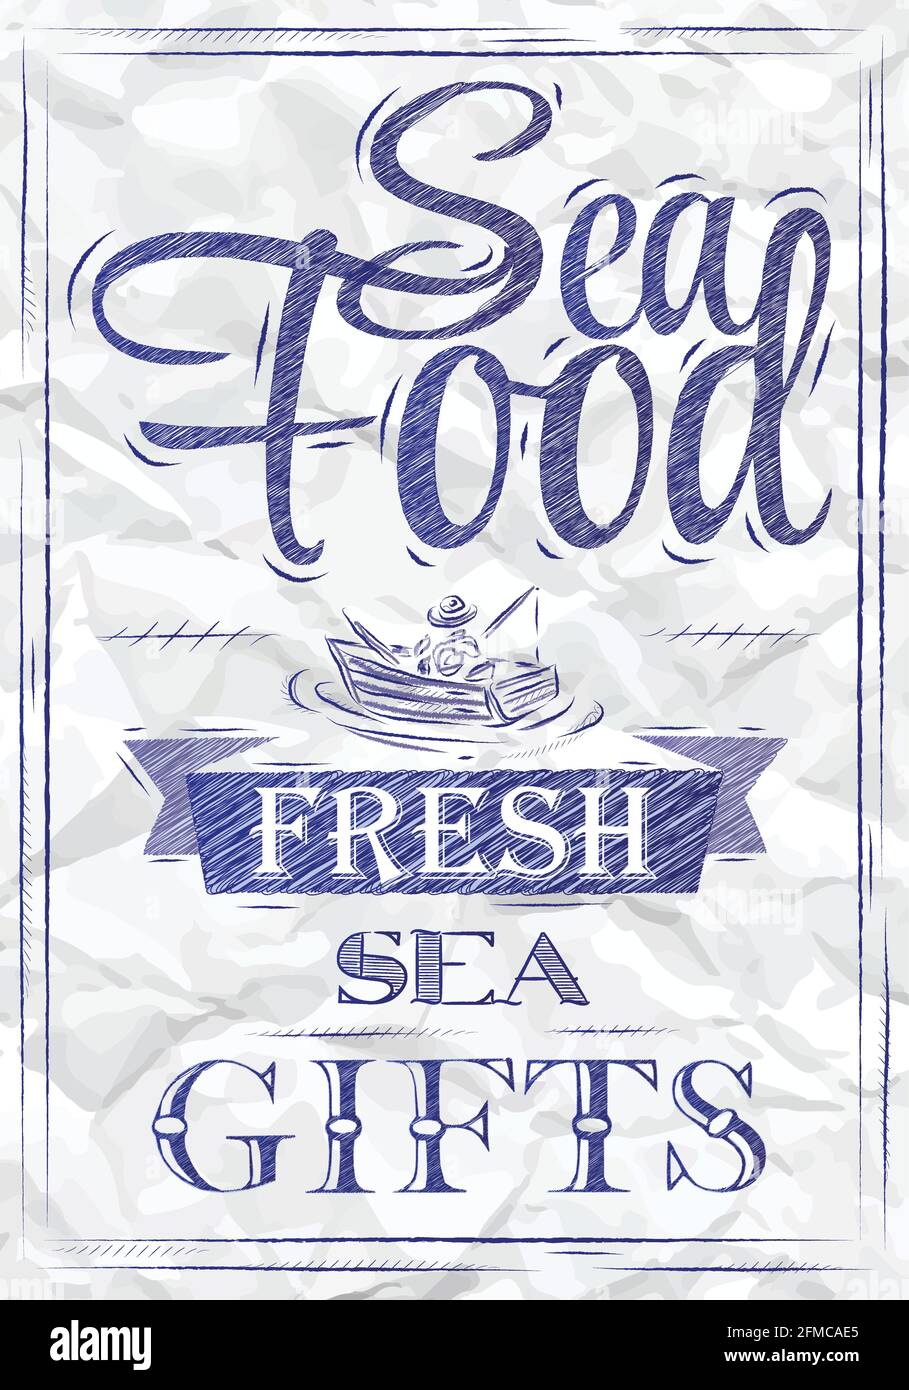 Affiche fruits de mer fruits de mer frais de style rétro dessin stylisé d'un stylo bleu sur un papier froissé. Illustration de Vecteur